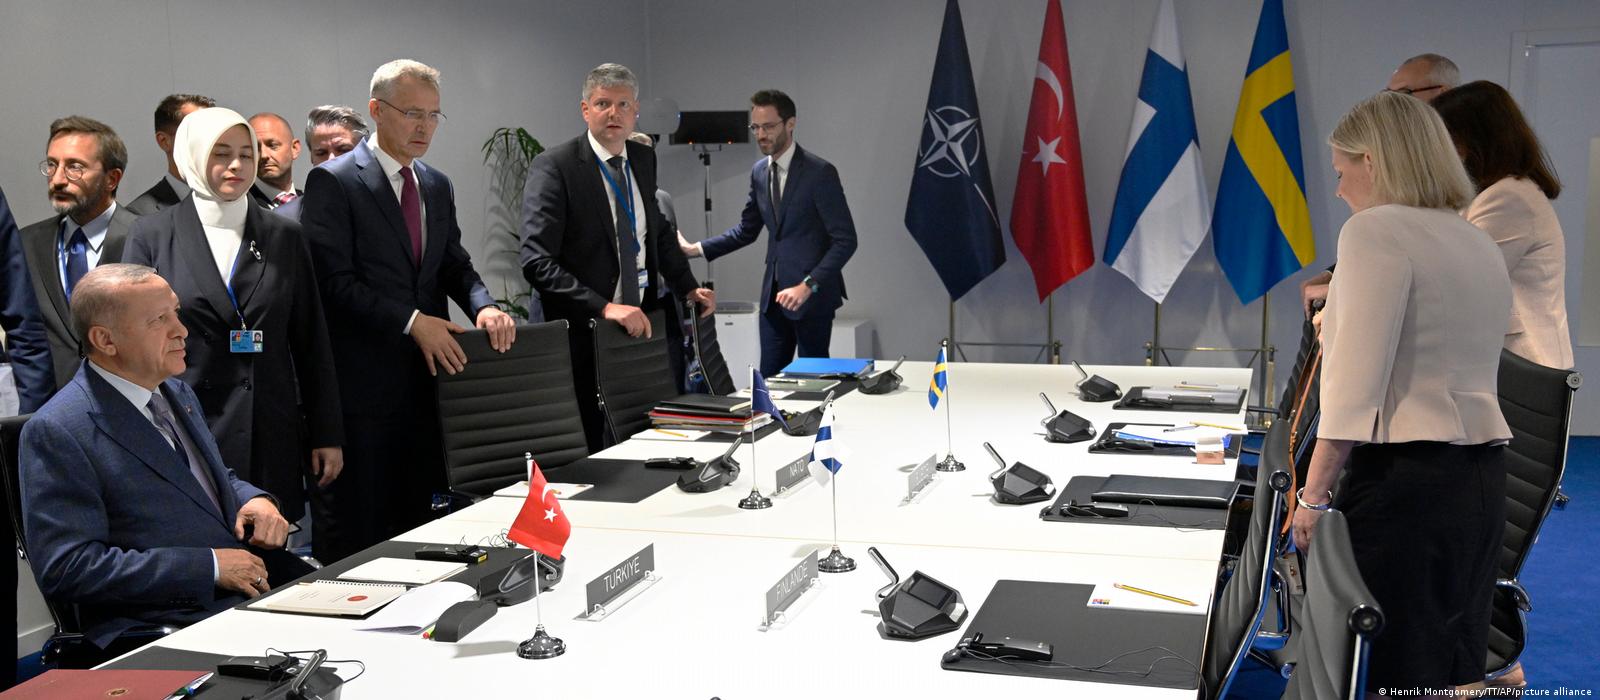 Türkiye, İsveç ve Finlandiya üçlü memorandum imzaladı: Türkiye NATO üyeliklerini destekleyecek